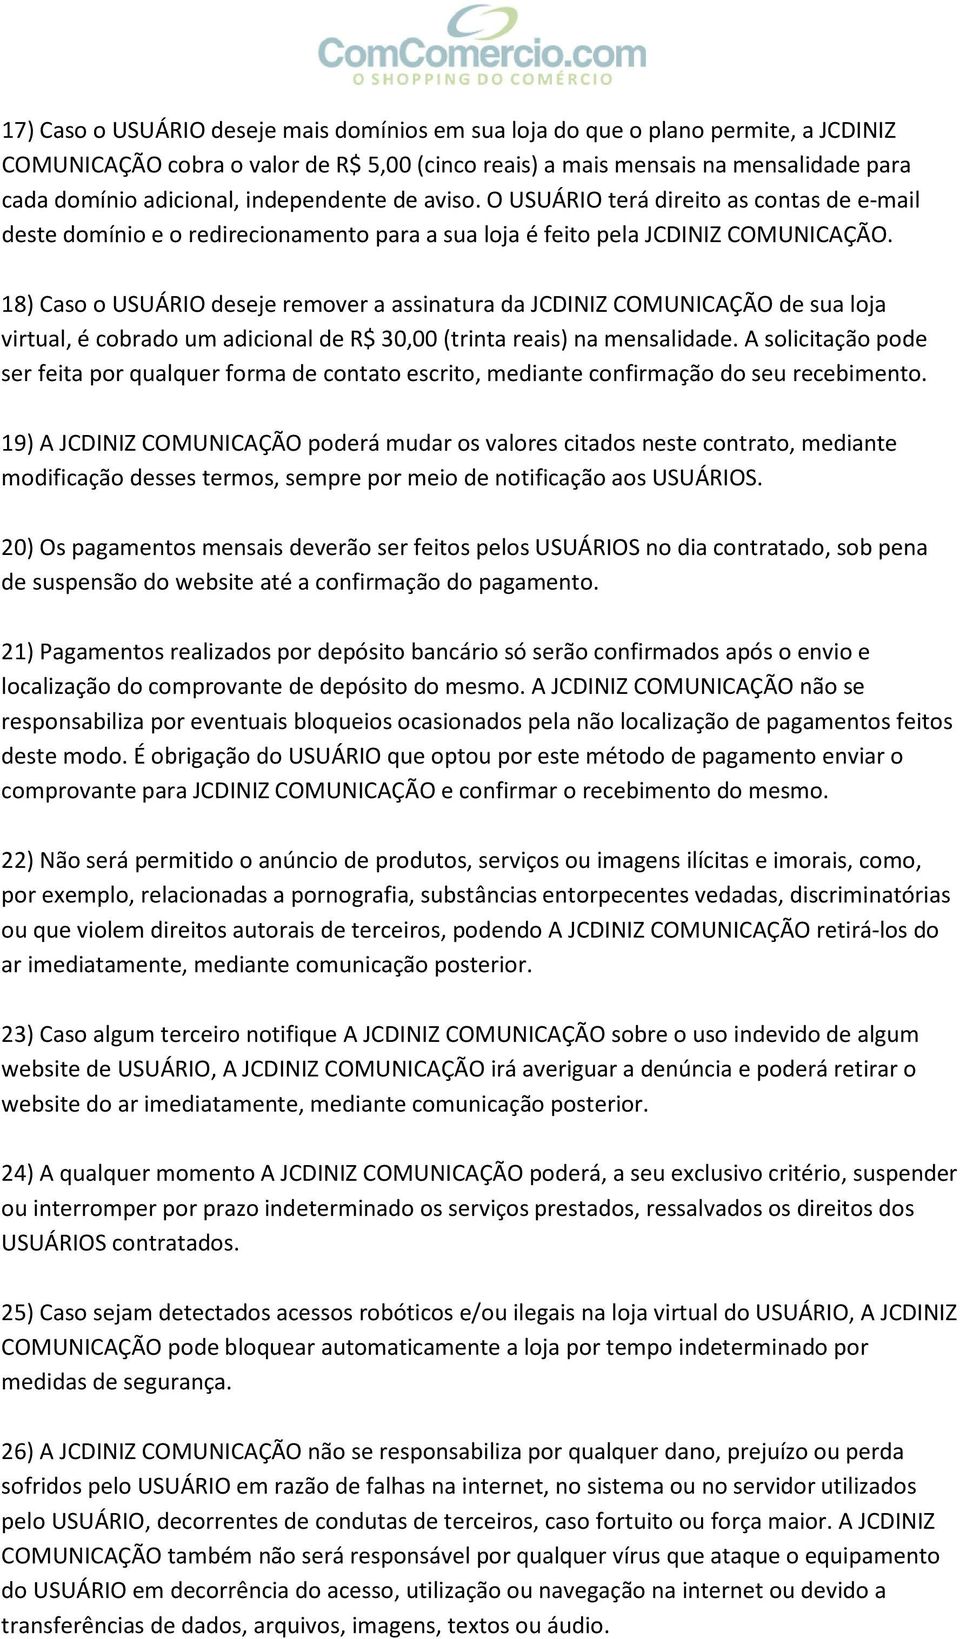 18) Caso o USUÁRIO deseje remover a assinatura da JCDINIZ COMUNICAÇÃO de sua loja virtual, é cobrado um adicional de R$ 30,00 (trinta reais) na mensalidade.